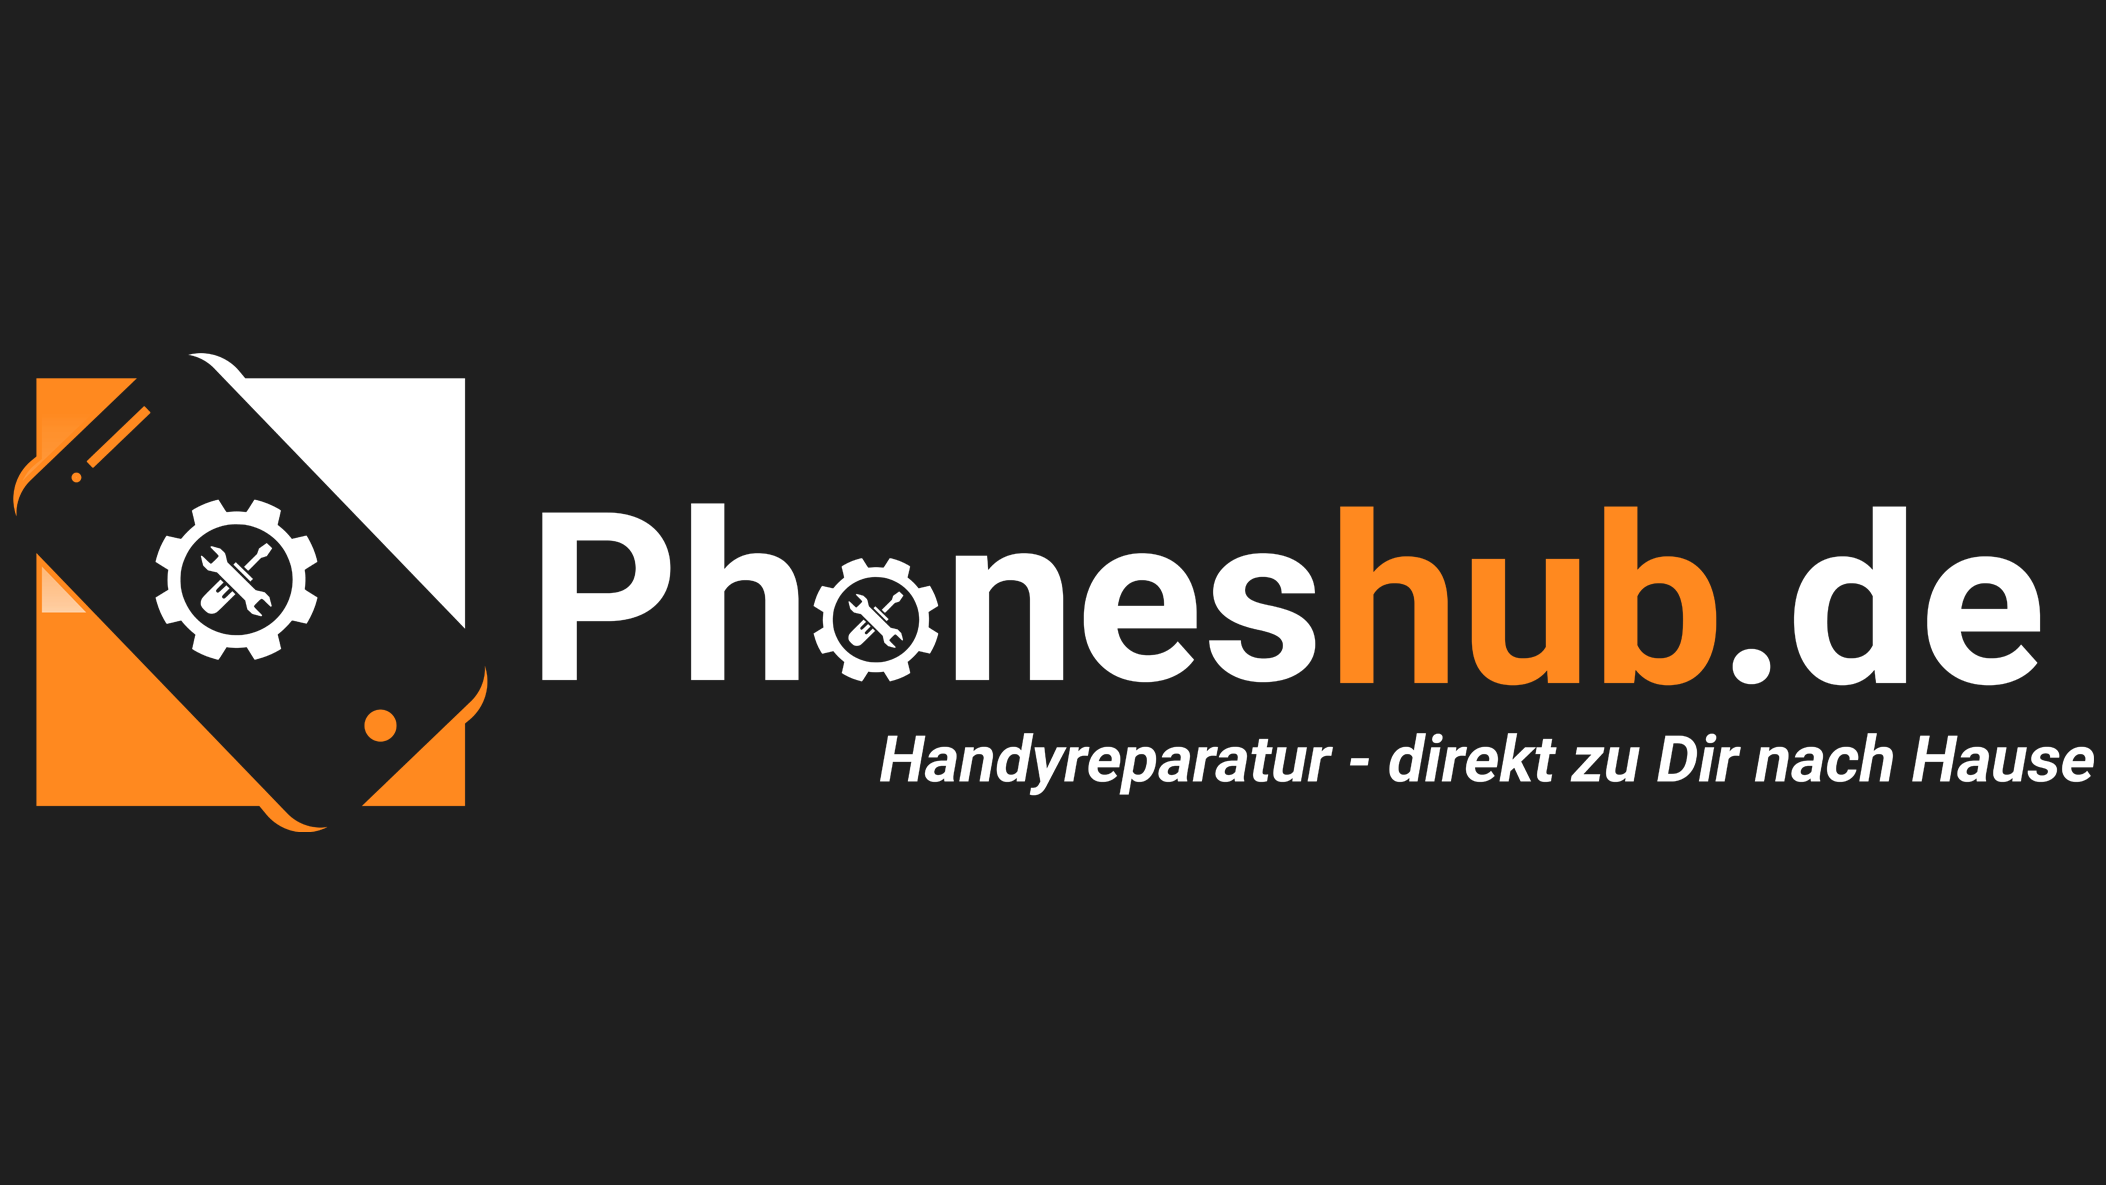 Bild 4 phoneshub - Handyreparatur direkt zu Dir nach Hause in Bebra